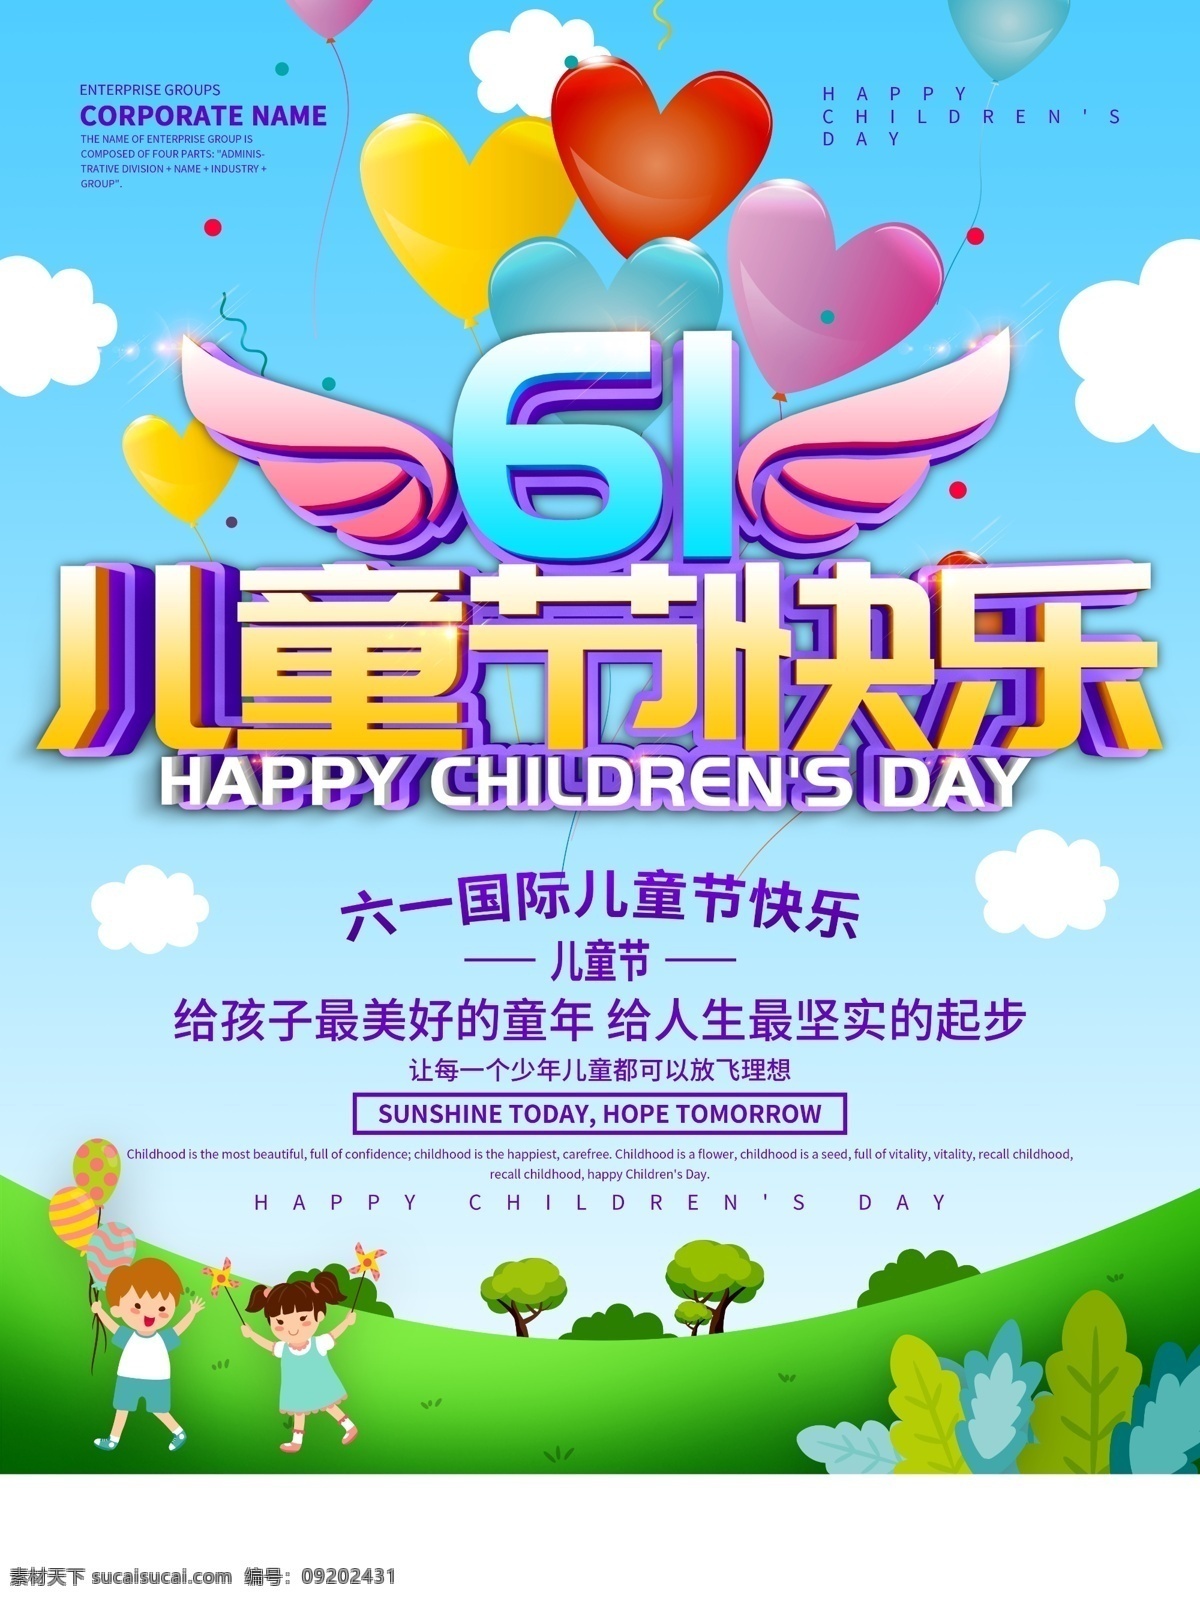 蓝色 小 清新 61 儿童节 快乐 海报 61儿童节 儿童节快乐 儿童节促销 儿童节海报 节日海报